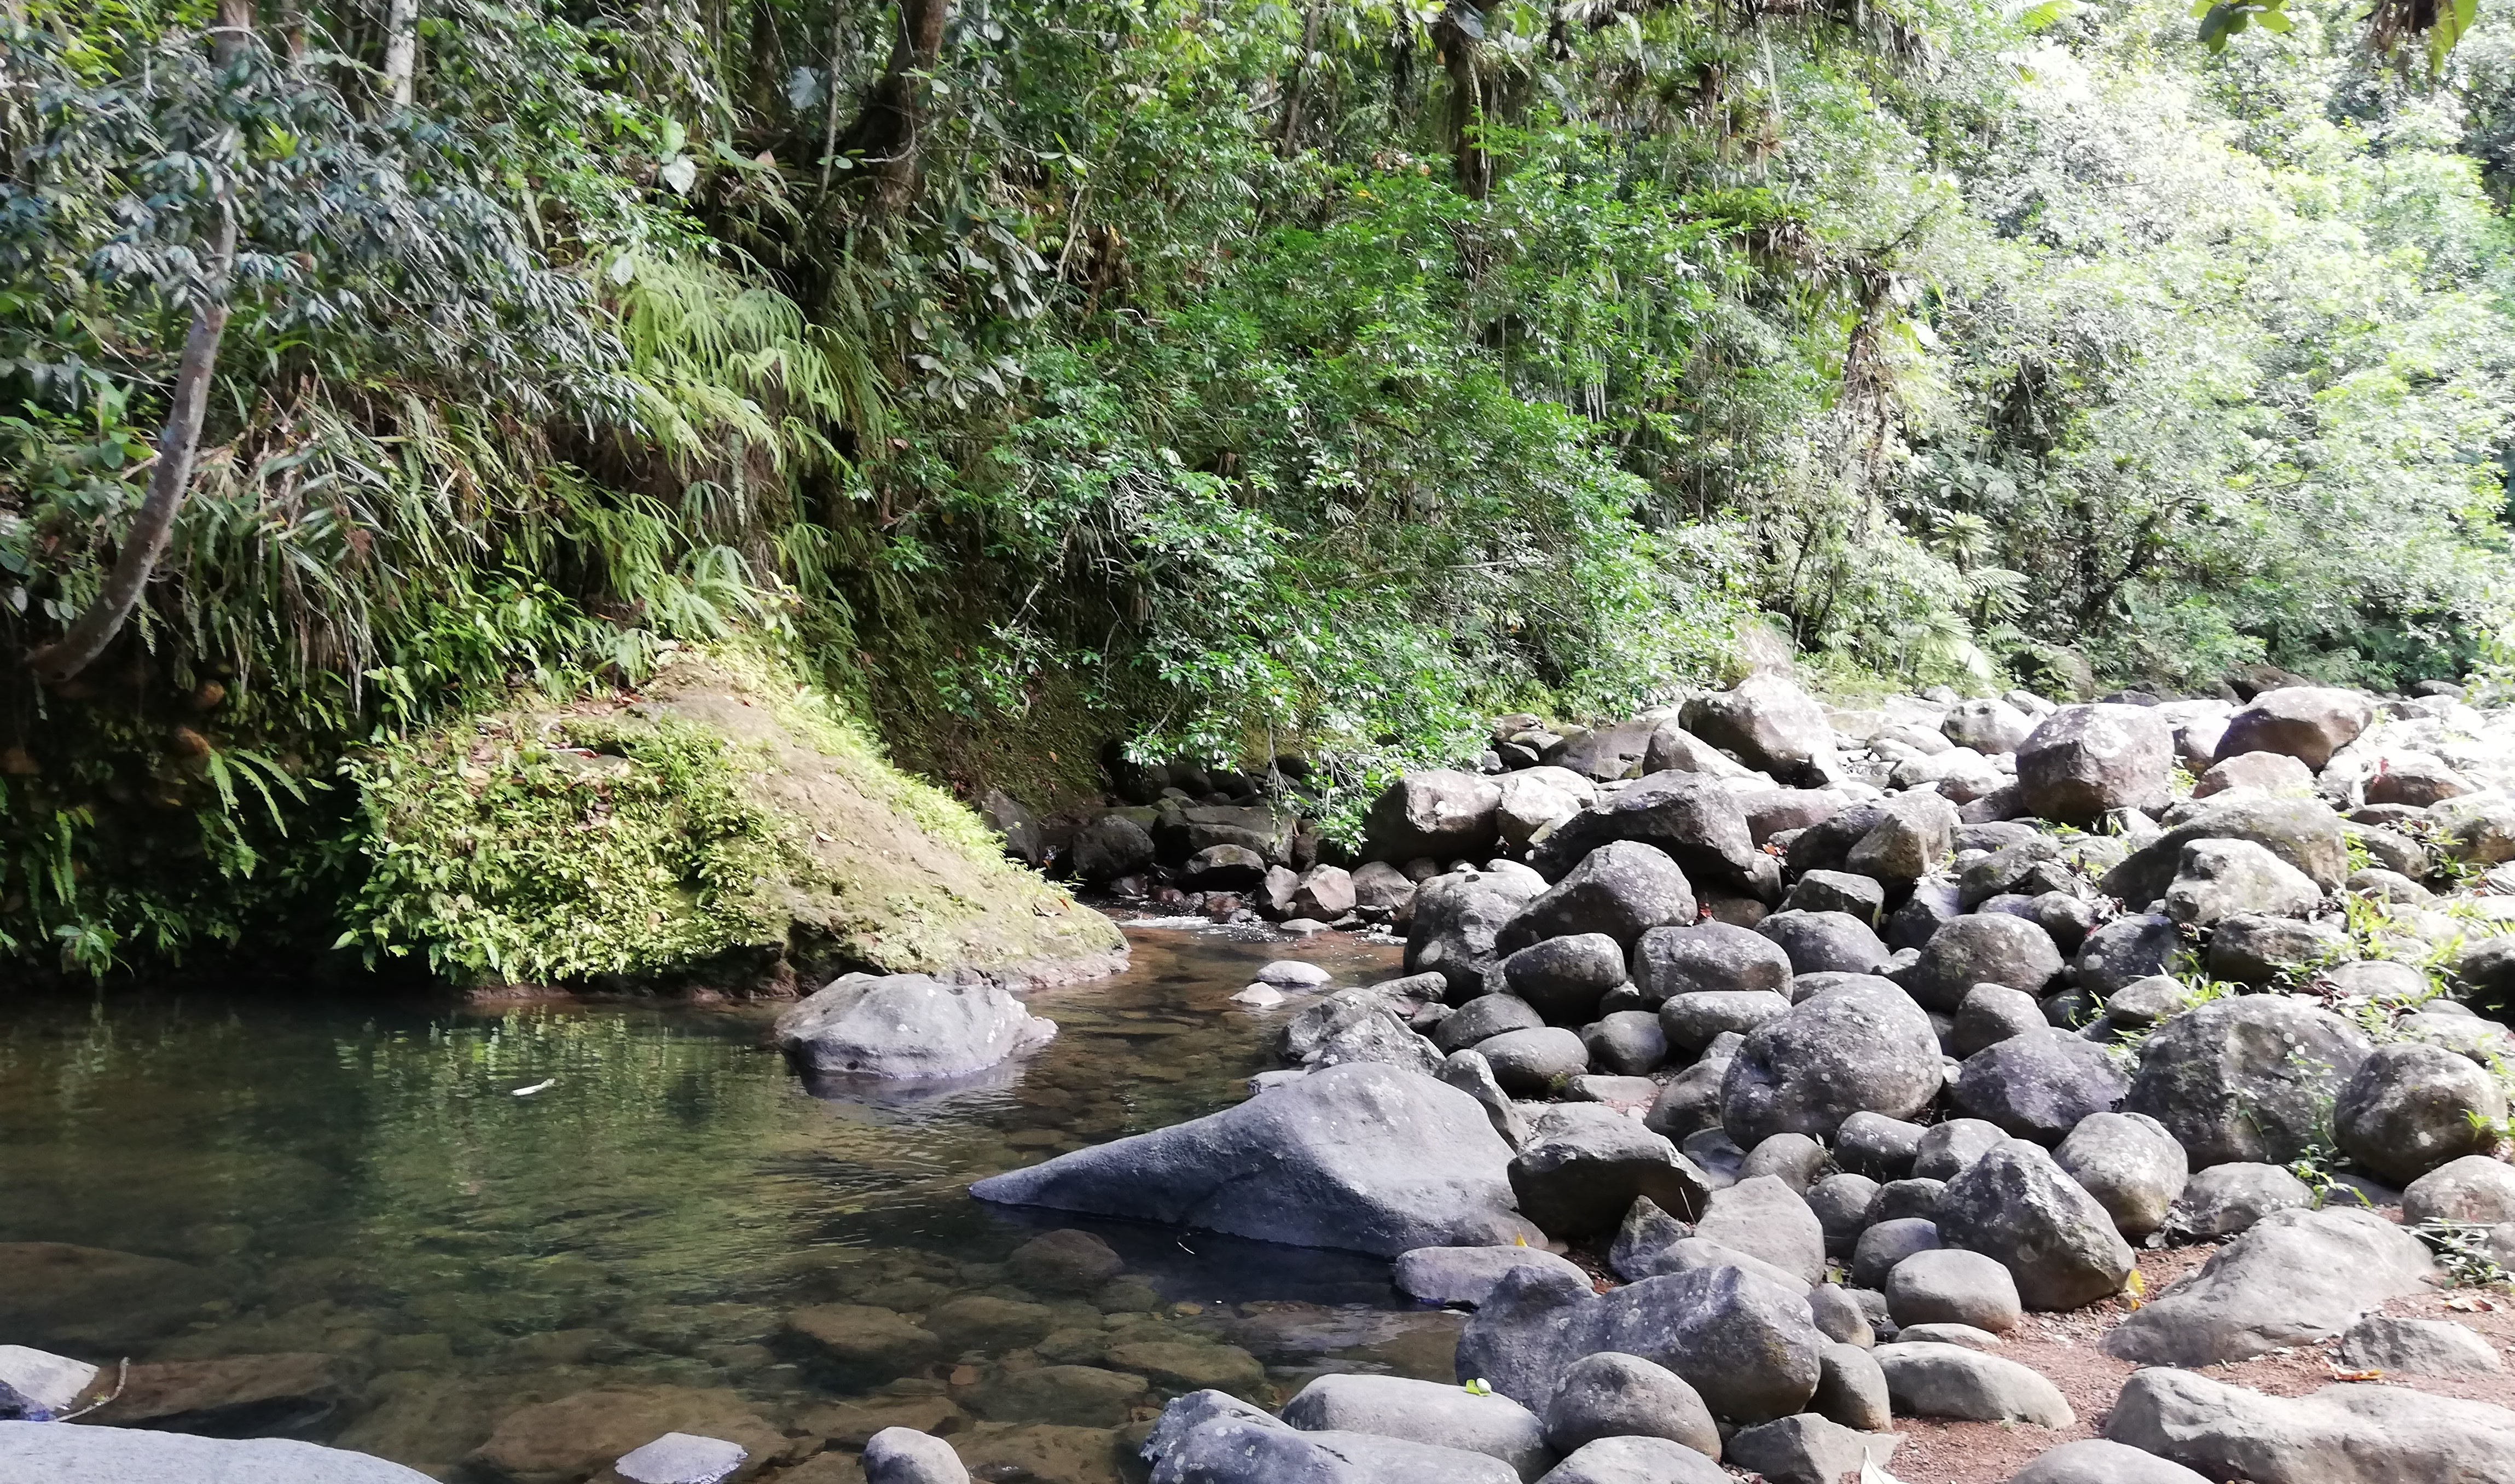     Un cahier pour comprendre la ressource en eau et le changement climatique en Guadeloupe 

